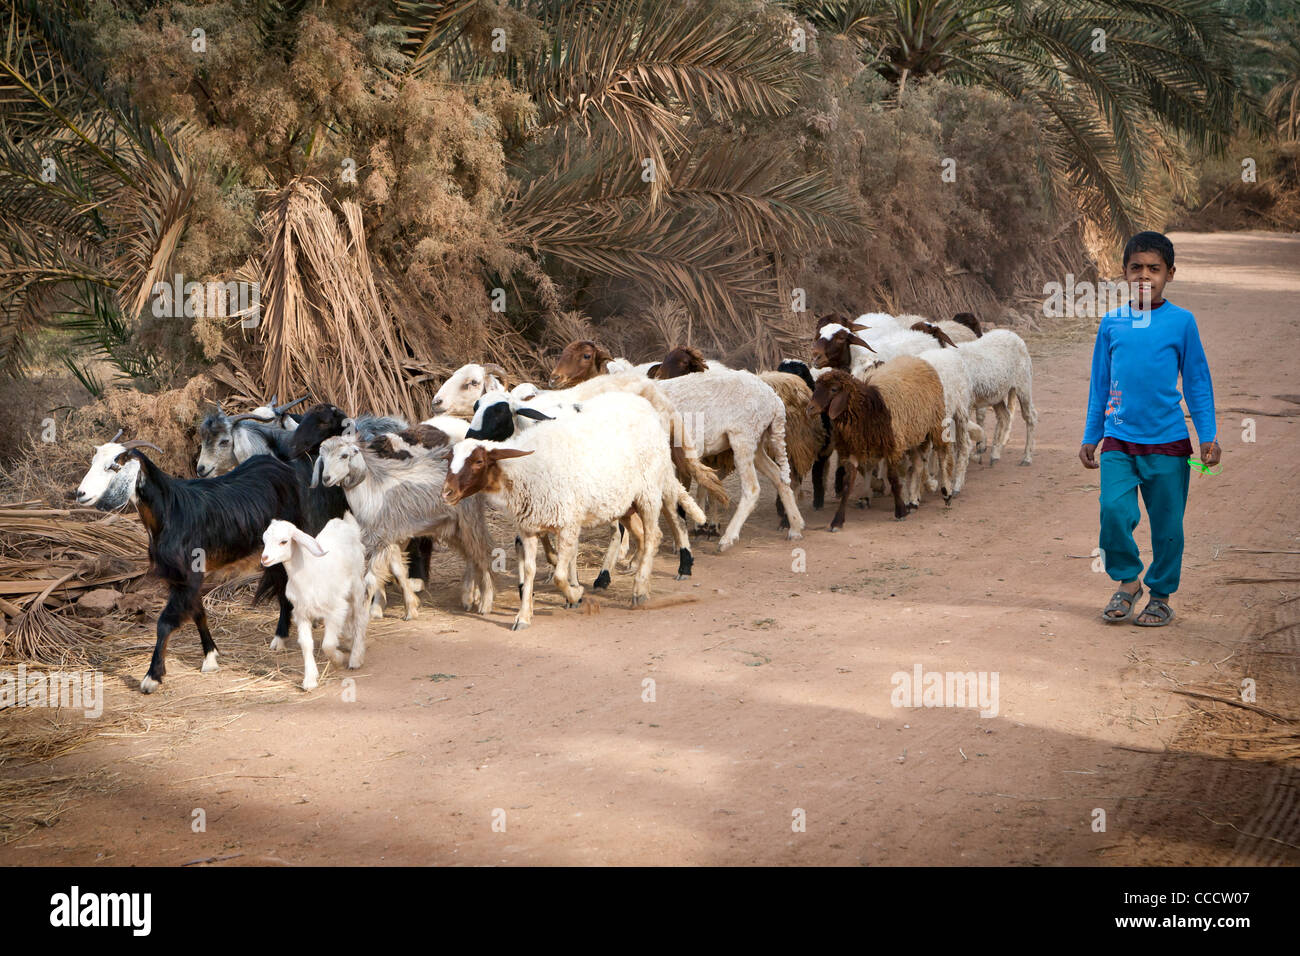 Jeune garçon marche avec troupeau de moutons et chèvres à Dakhla Oasis, Désert occidental de l'Égypte Banque D'Images